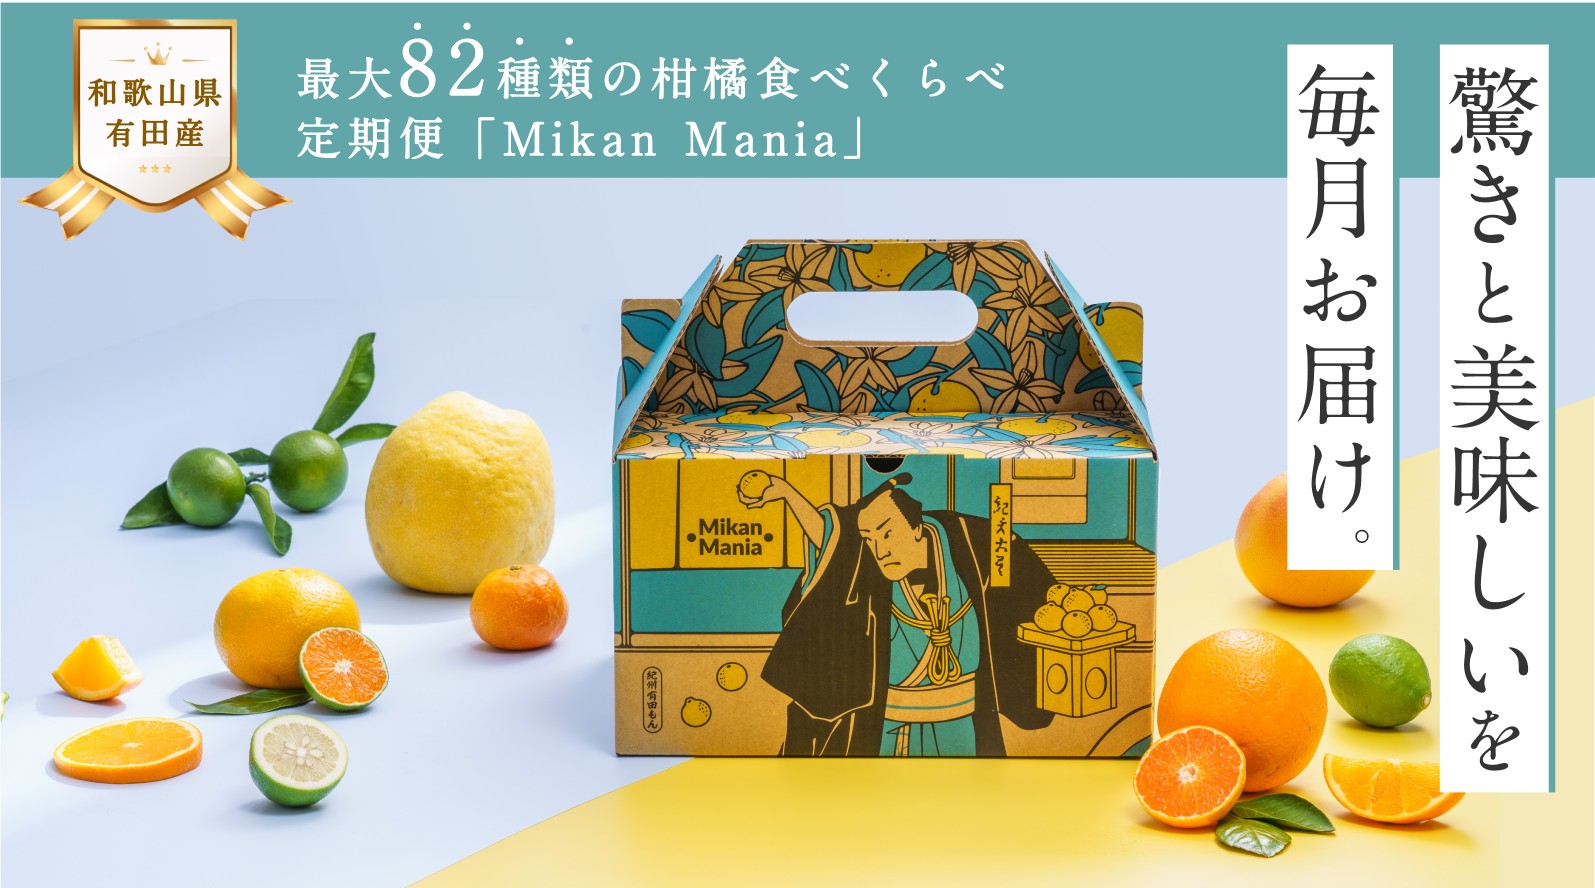 【年度テーマ】Mikan Mania